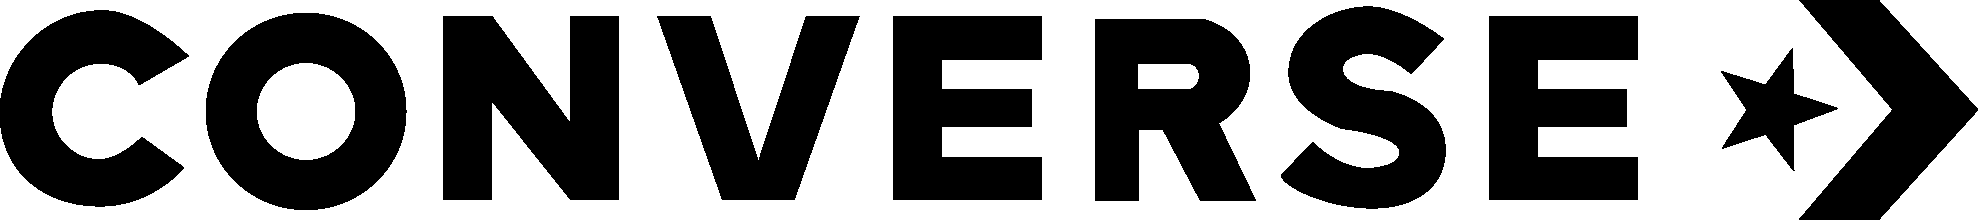 Converse Logo Download Vector